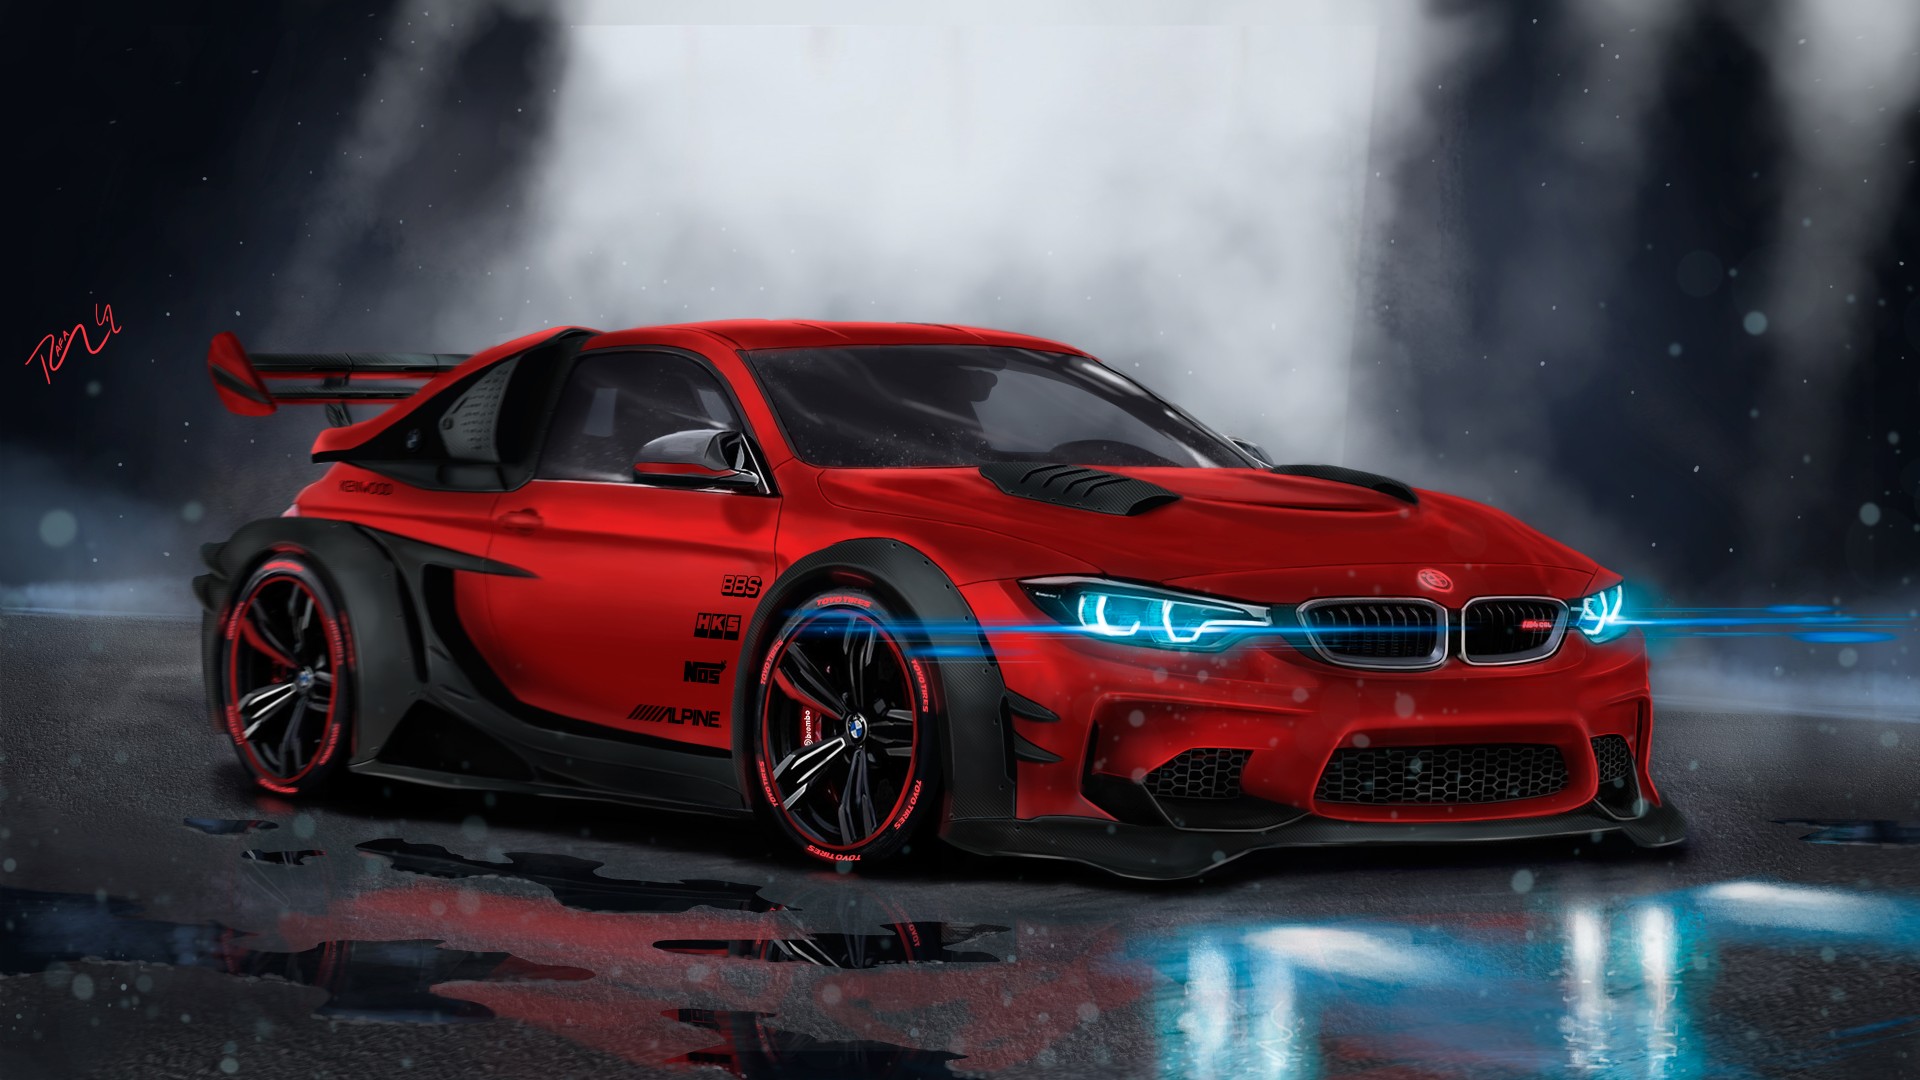 BMW M4 Custom CGI 4K Wallpaper | HD Car Wallpapers | ID #9028